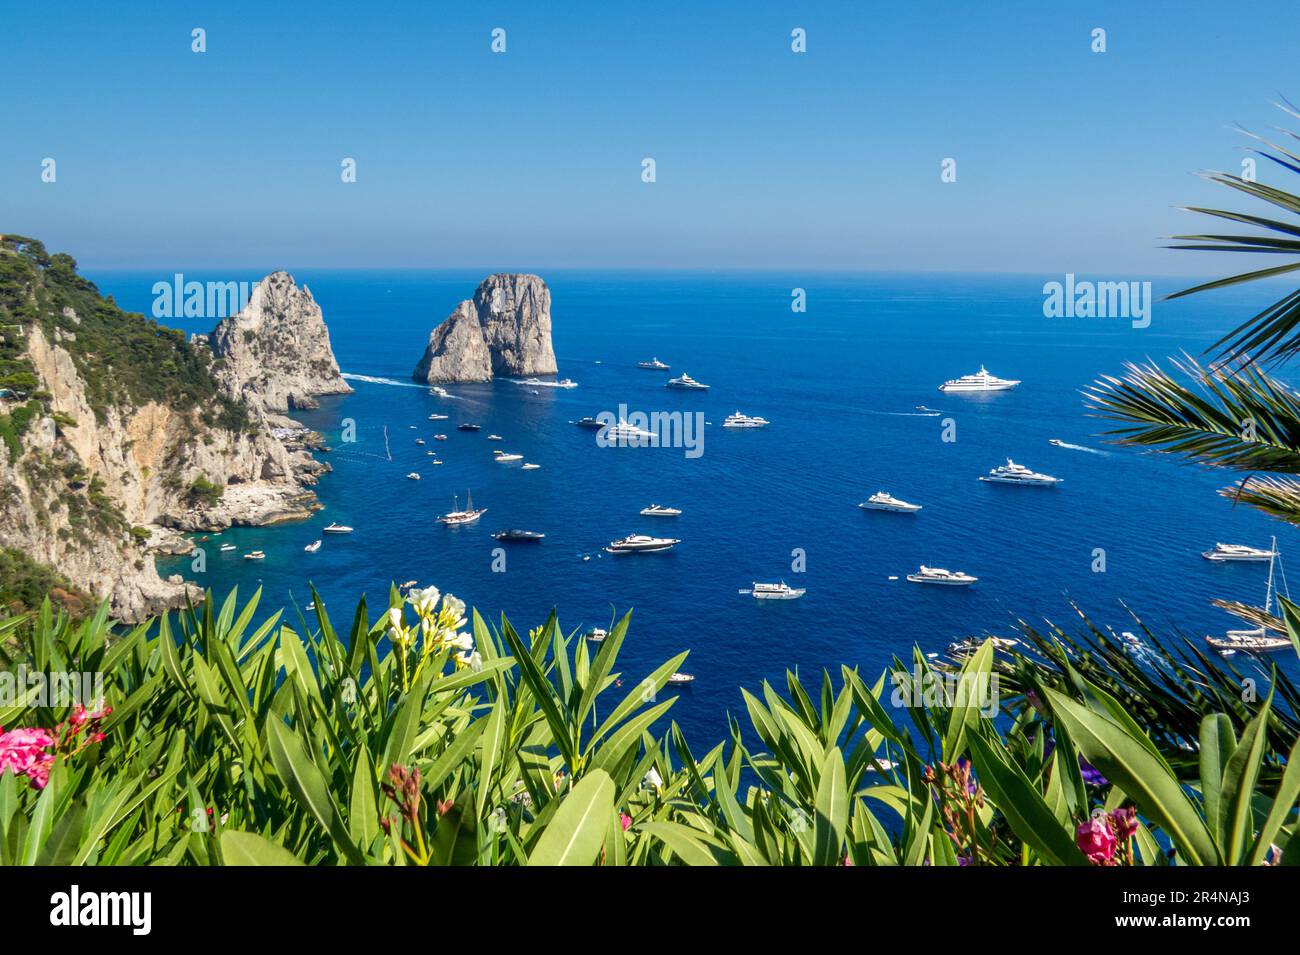 Los Faraglioni di Capri, los acantilados de Capri, son una serie de tres pequeños islotes. Barcos navegando a su alrededor, isla de Capri, Italia Stock Photo